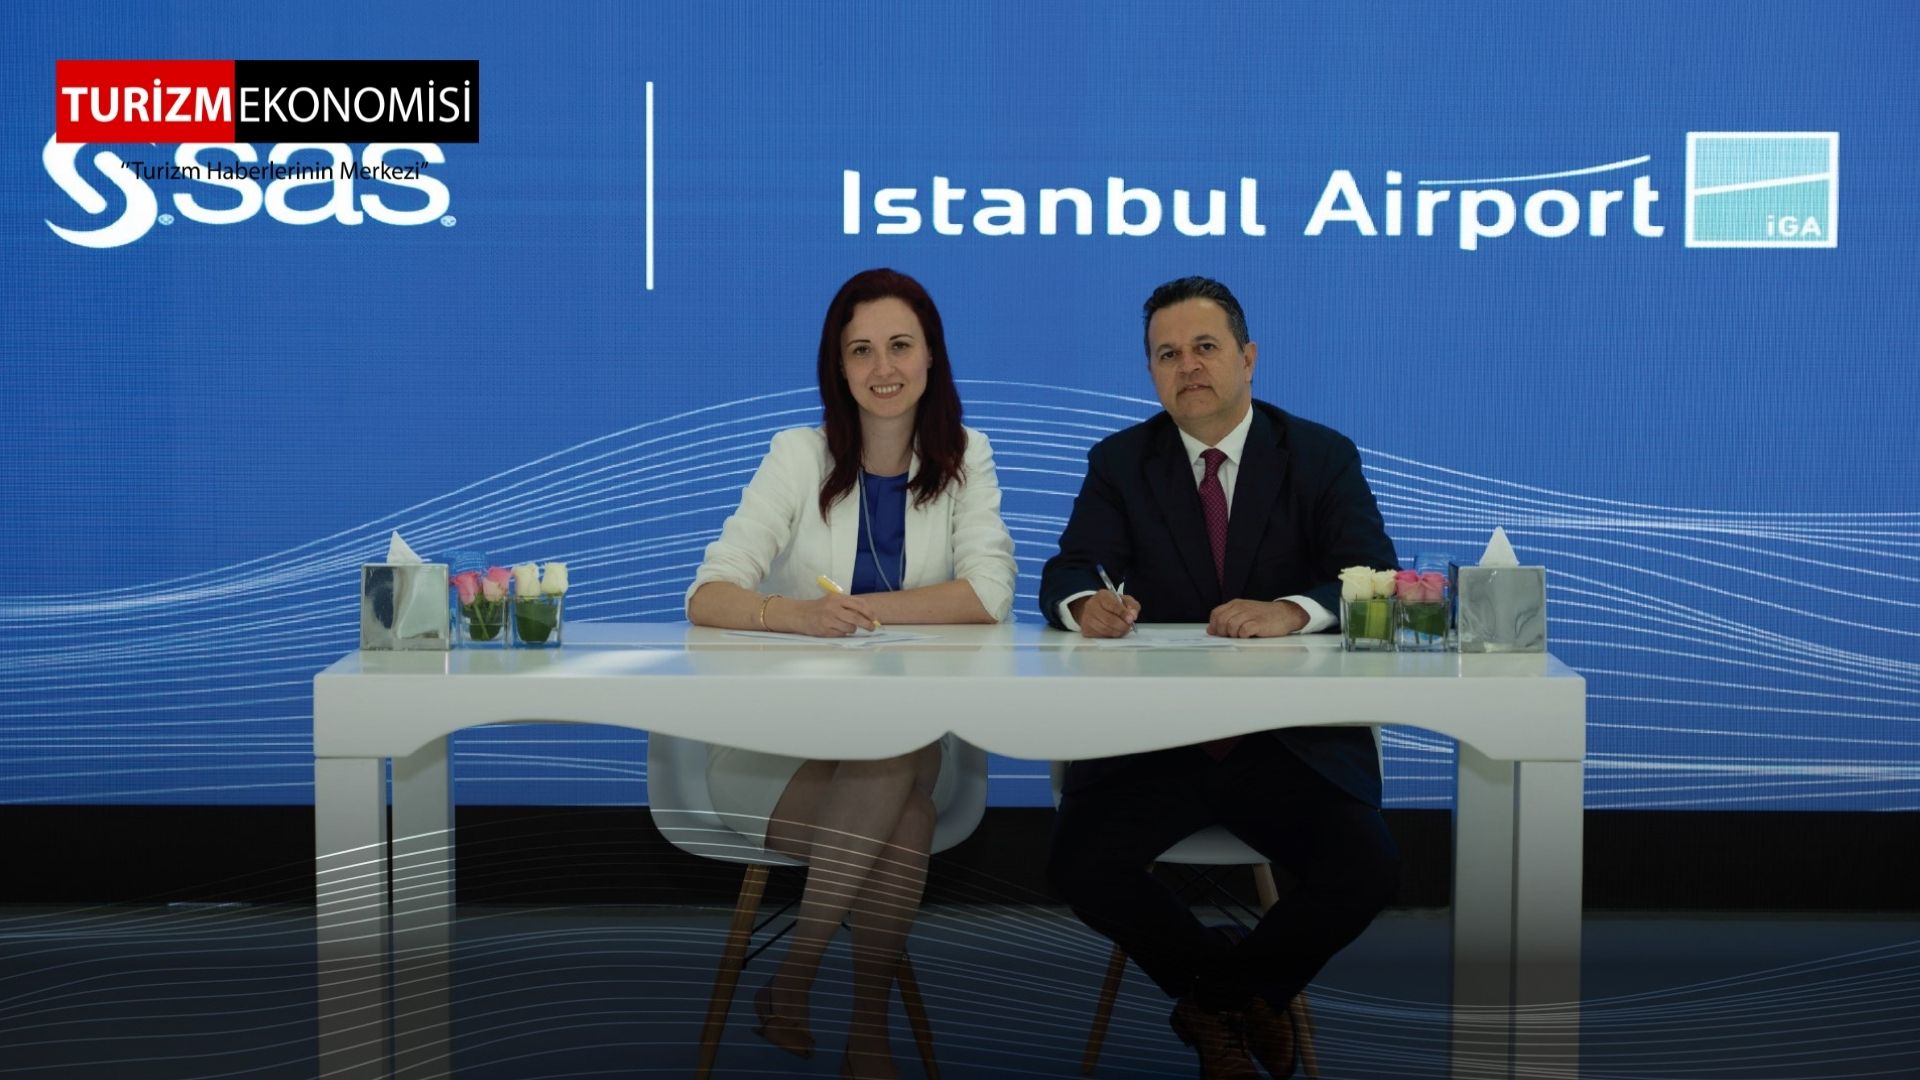 SAS ve IGA Ortaklığı ile İstanbul Dünyanın En Akıllı Havalimanlarından Birine Dönüşüyor